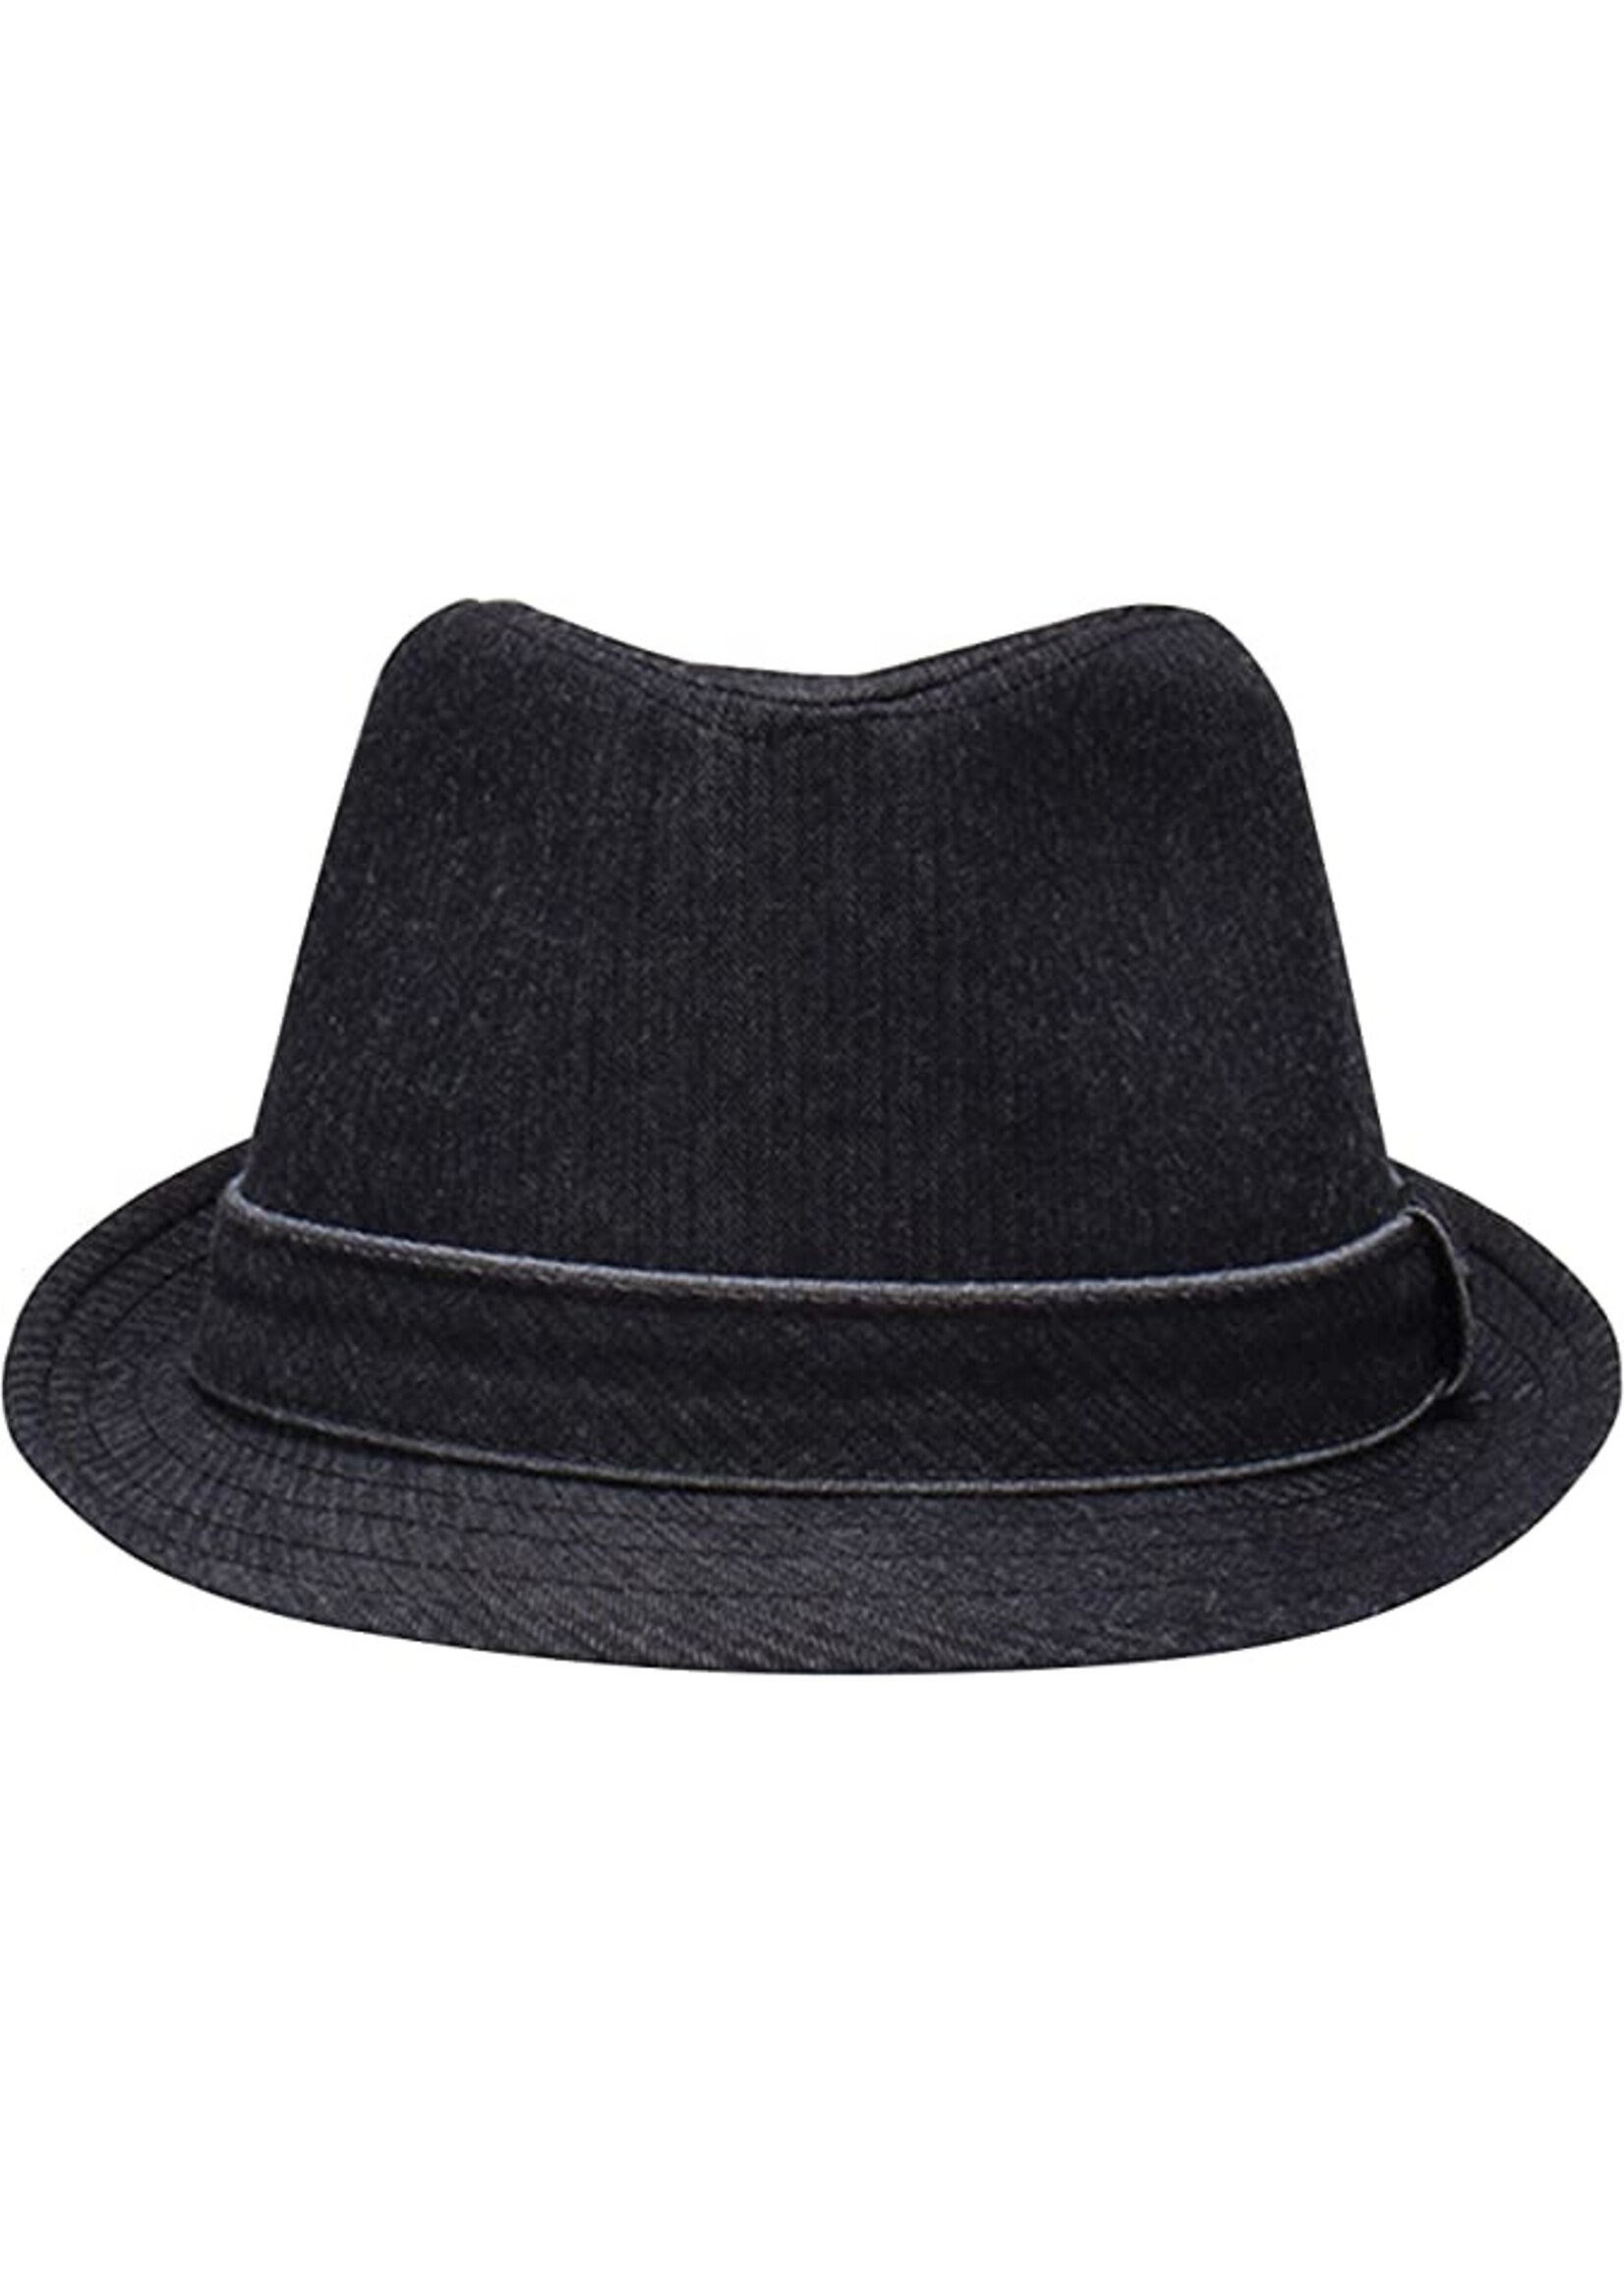 Levi Levi's Men's Classic Fedora Hat